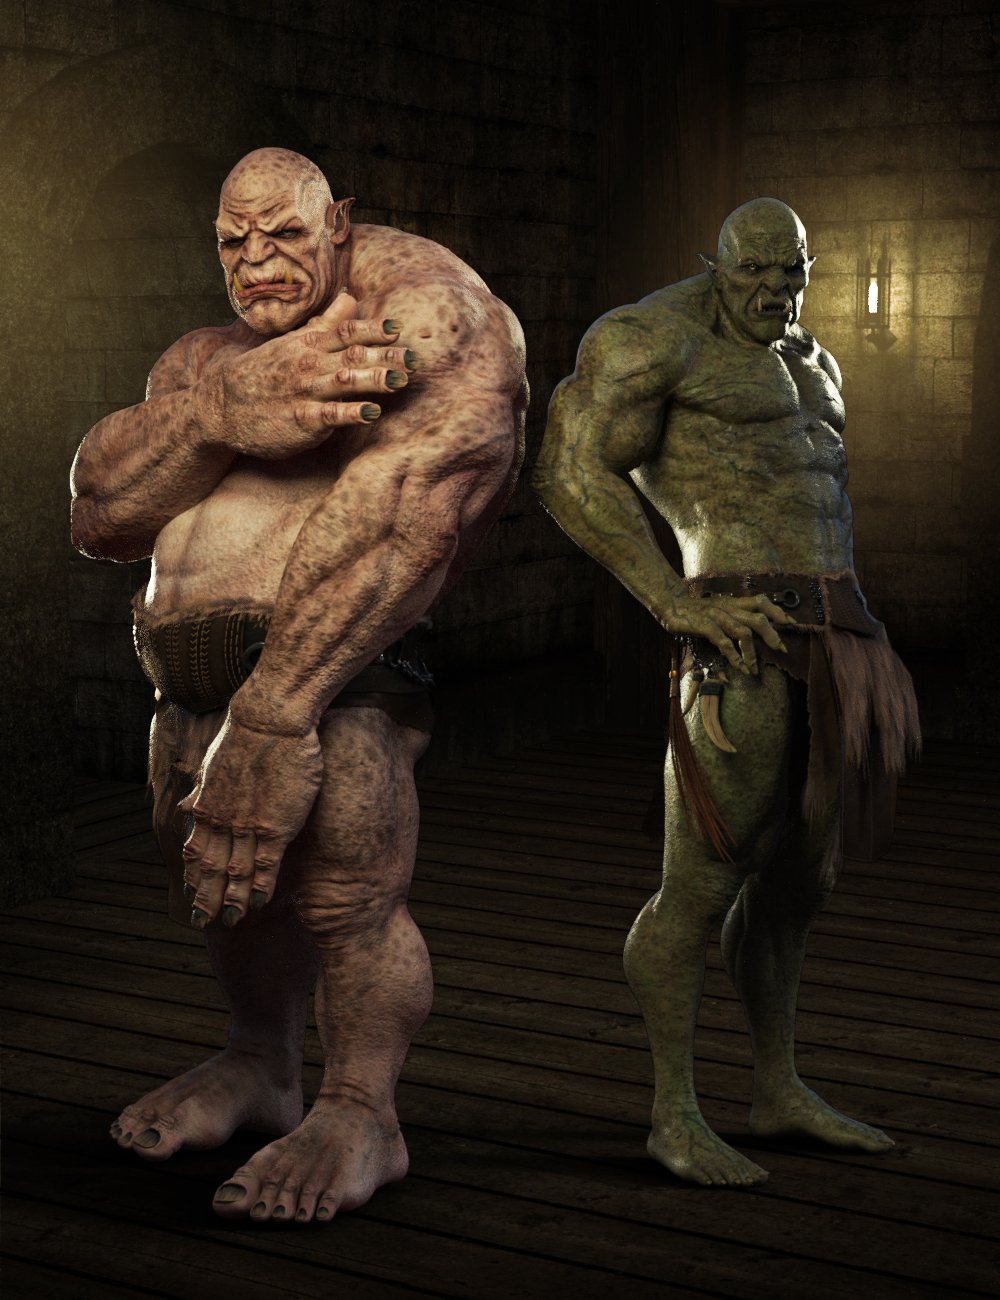 Ogre HD for Genesis 8 Male by: Josh Crockett, 3D Models by Daz 3D